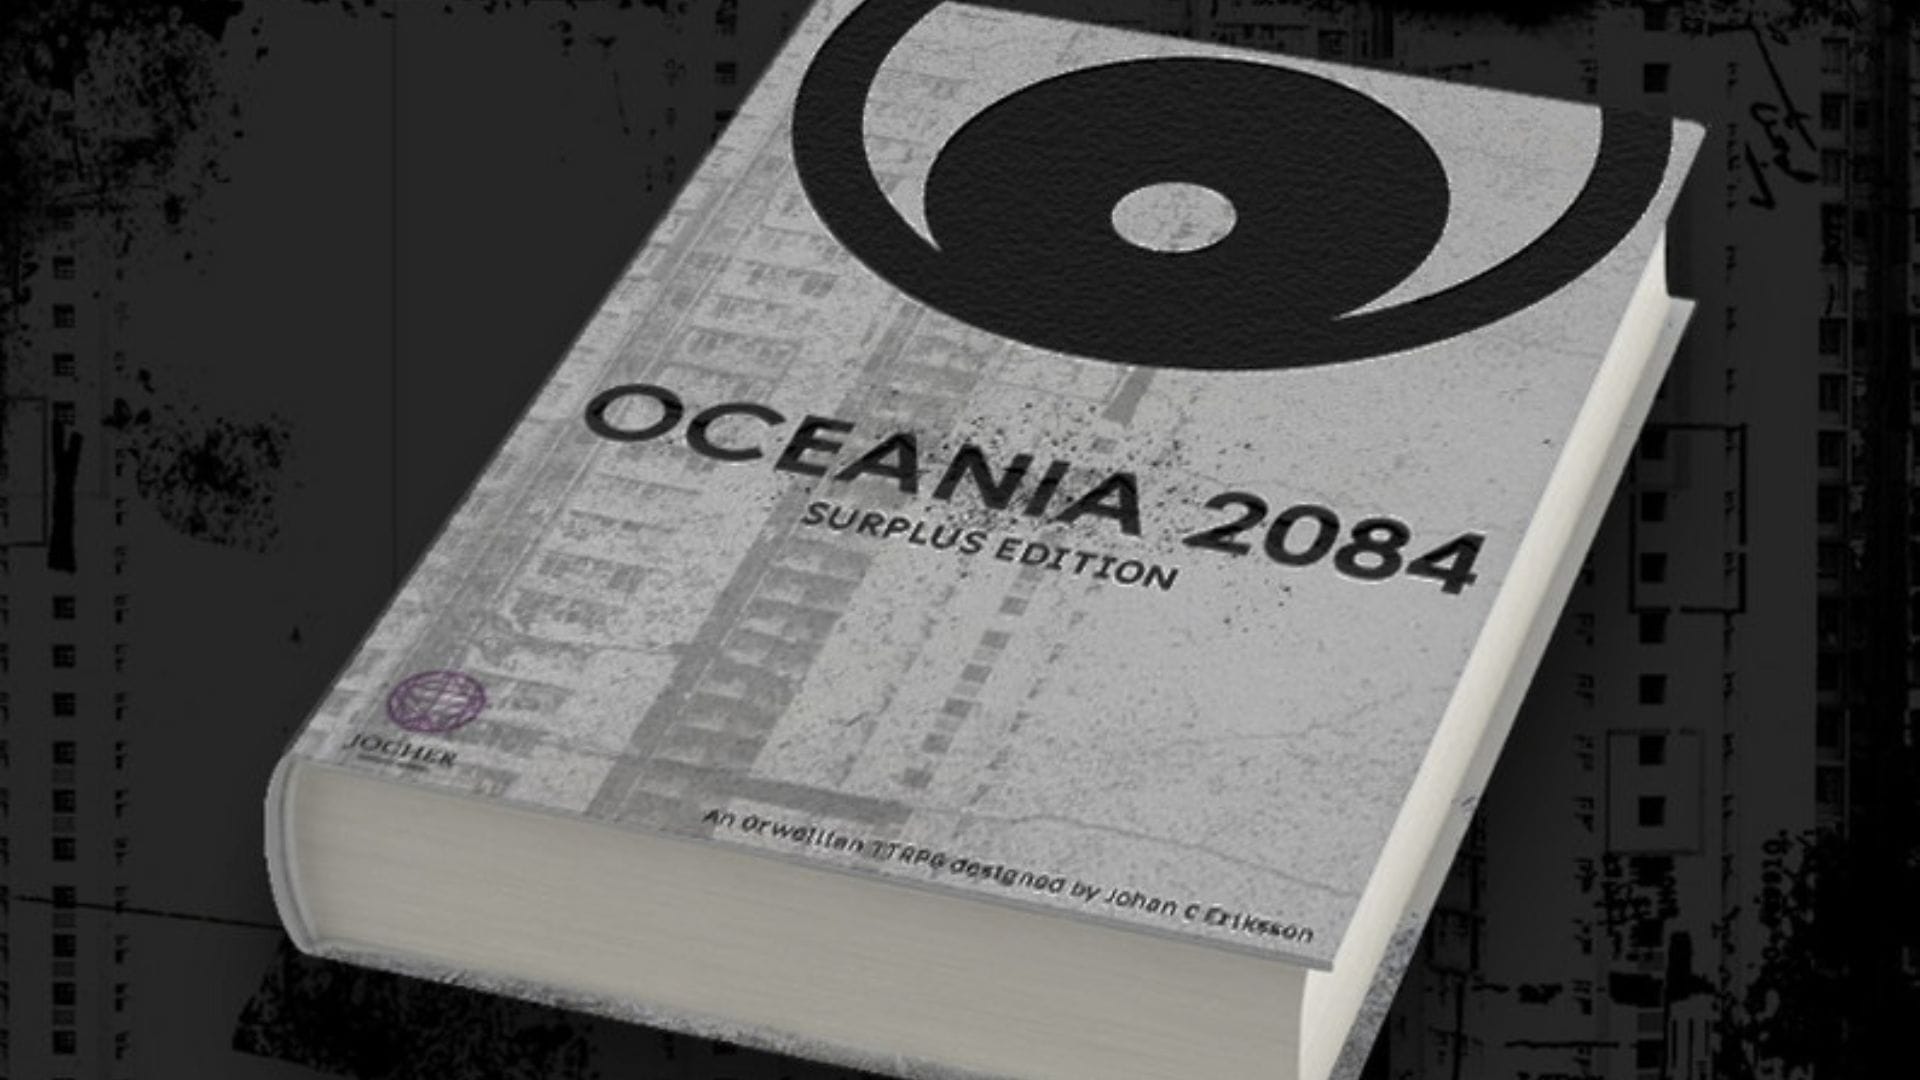 The unwinnable resistance of Oceania 2084